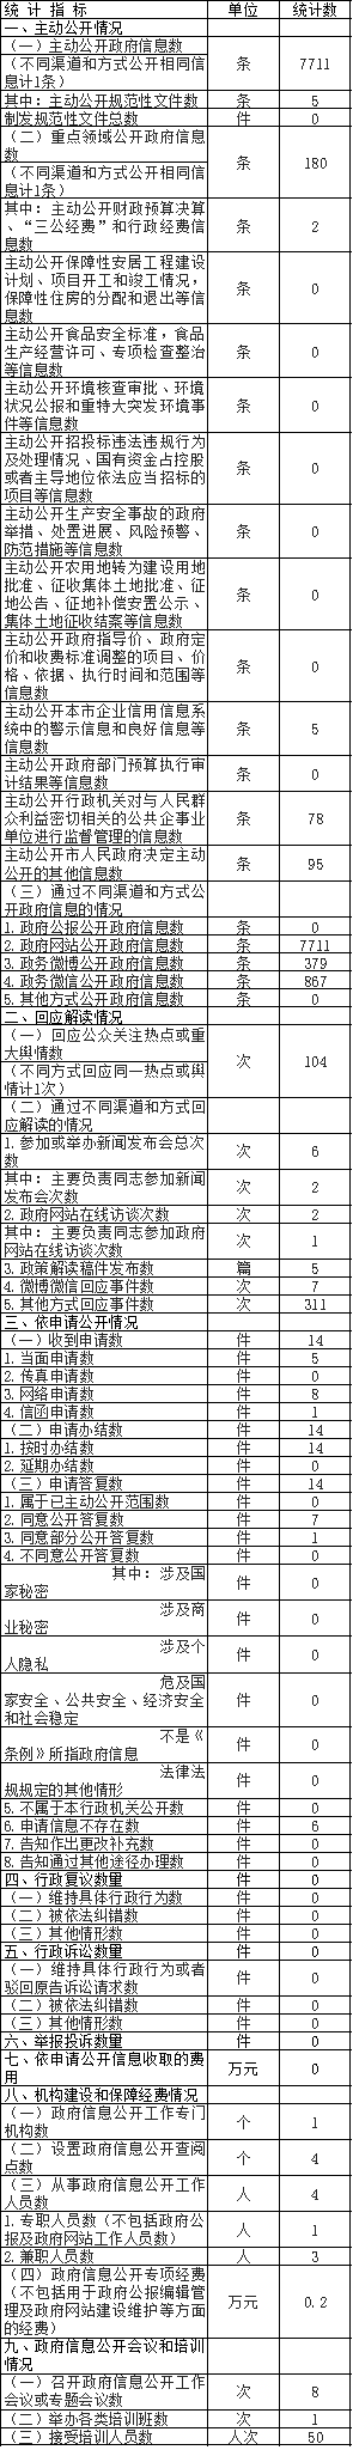 北京市新聞出版廣電局政府信息公開情況統計表(2017年度)